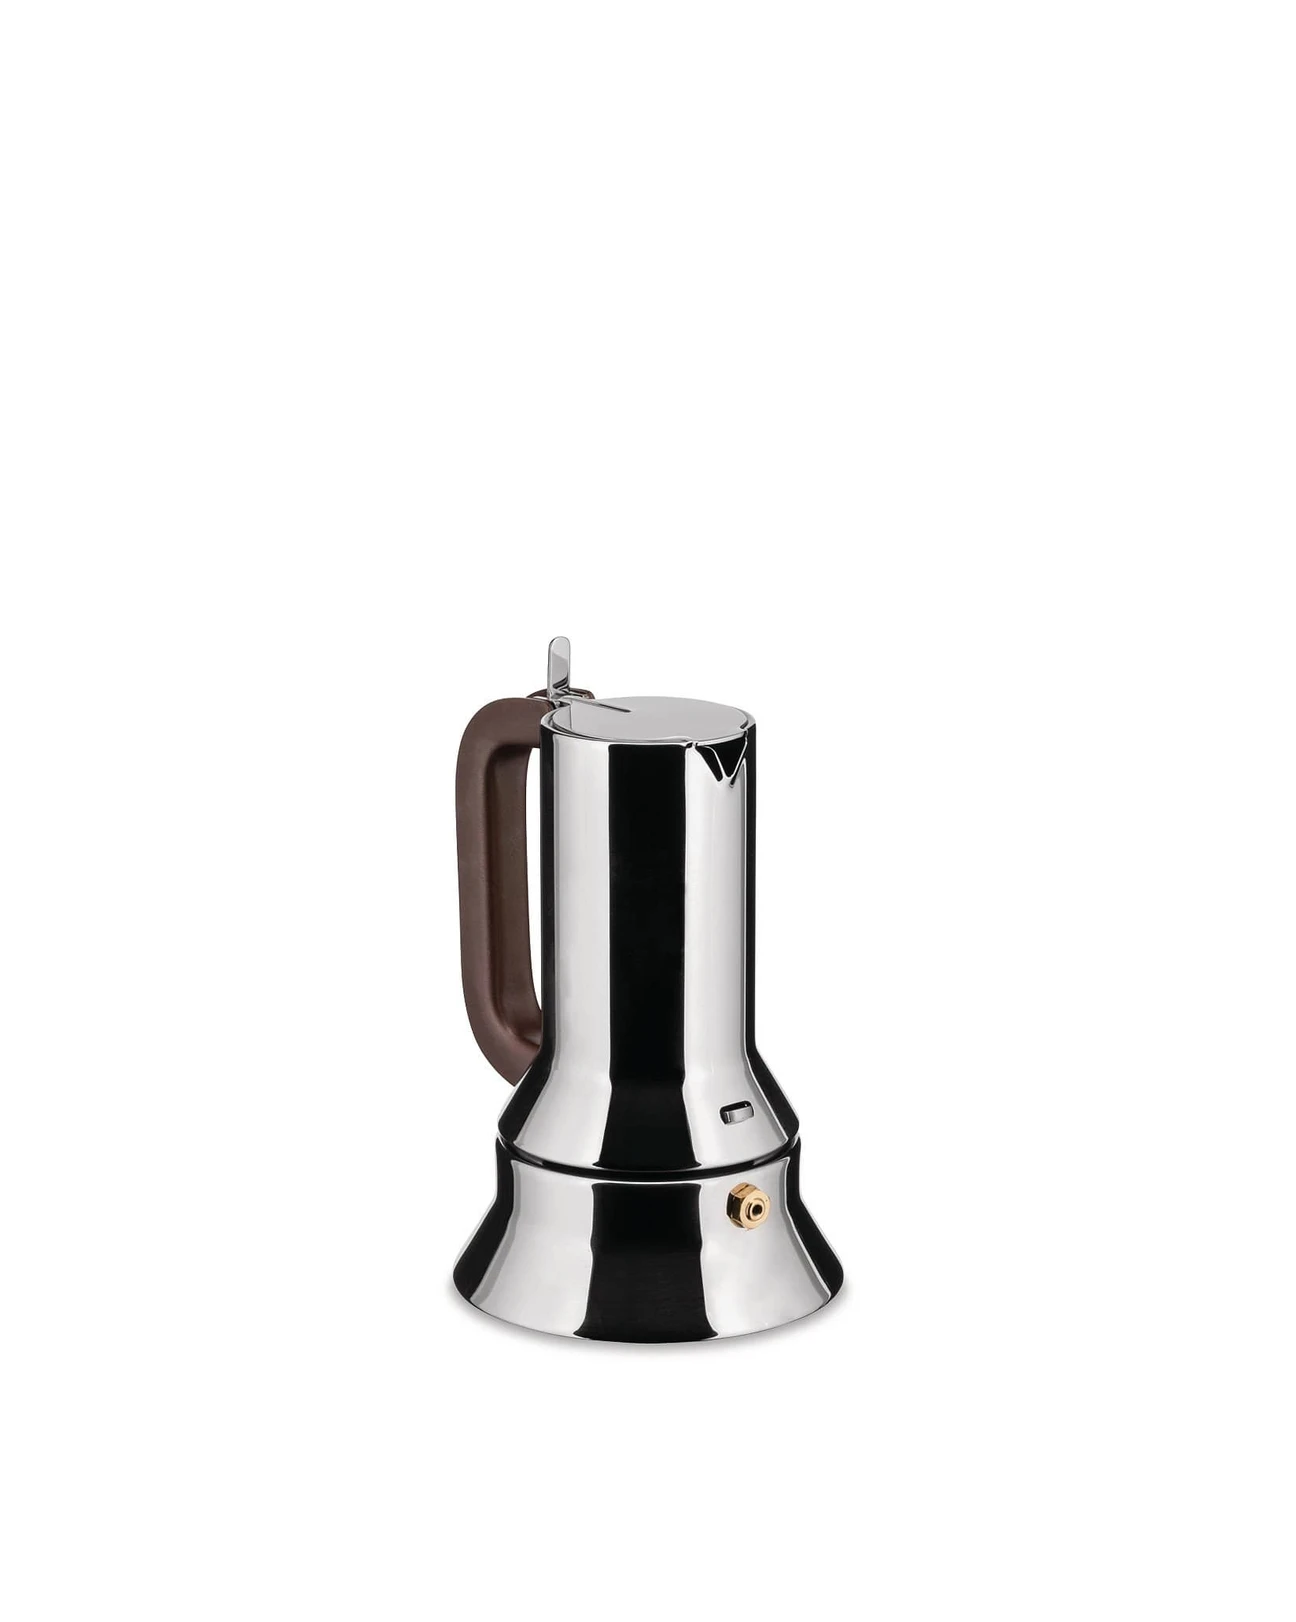 Alessi Espresso coffee maker 9090, 10 cups